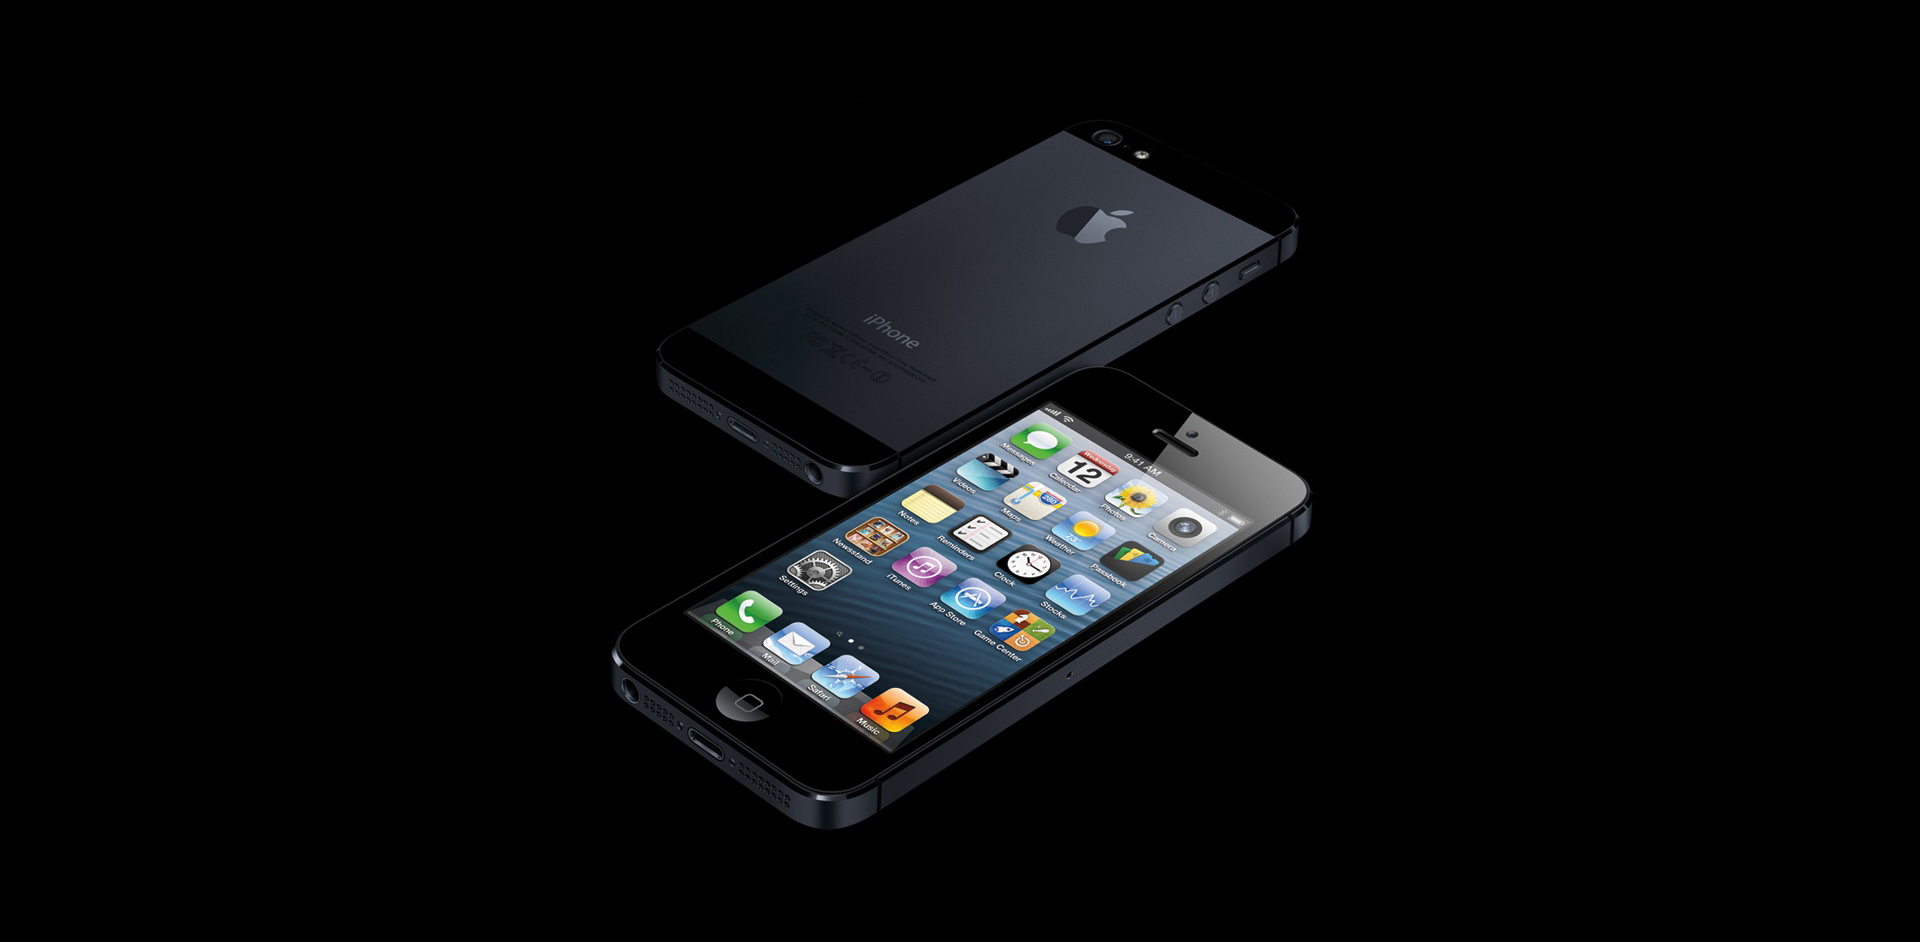  Apple reinventeaza fotografierea cu telefonul prin iPhone 5s